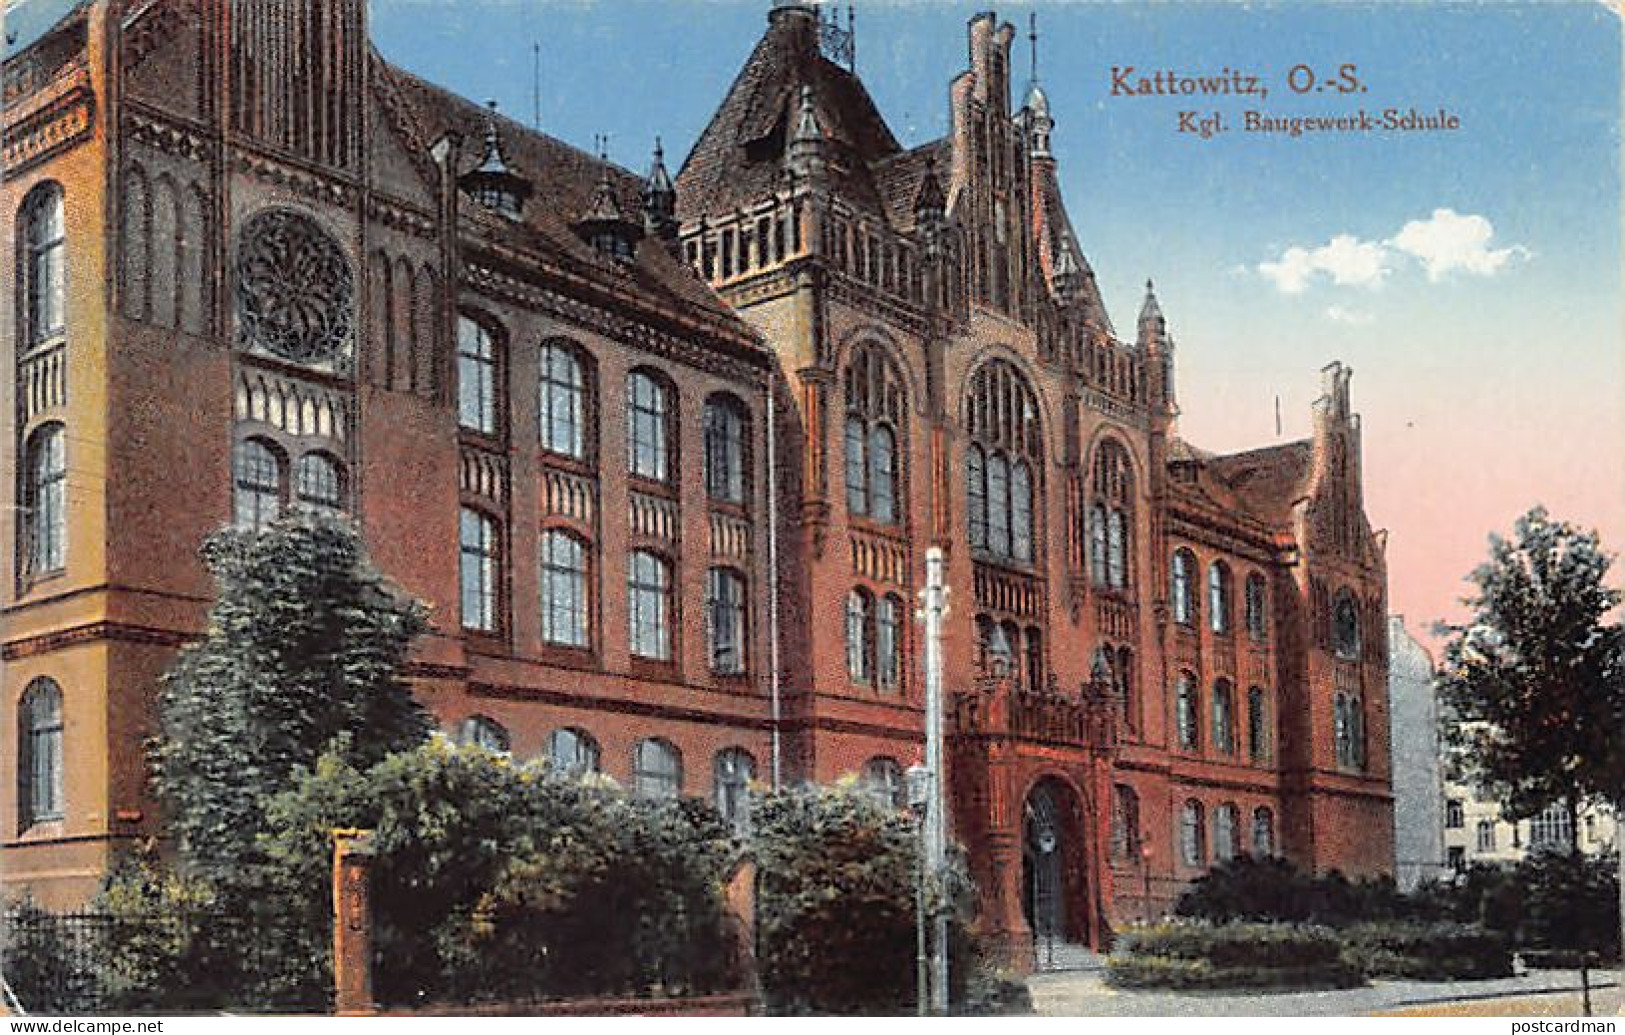 Poland - CHORZÓW Königshütte - Kgl. Baugewerk-Schule - Poland